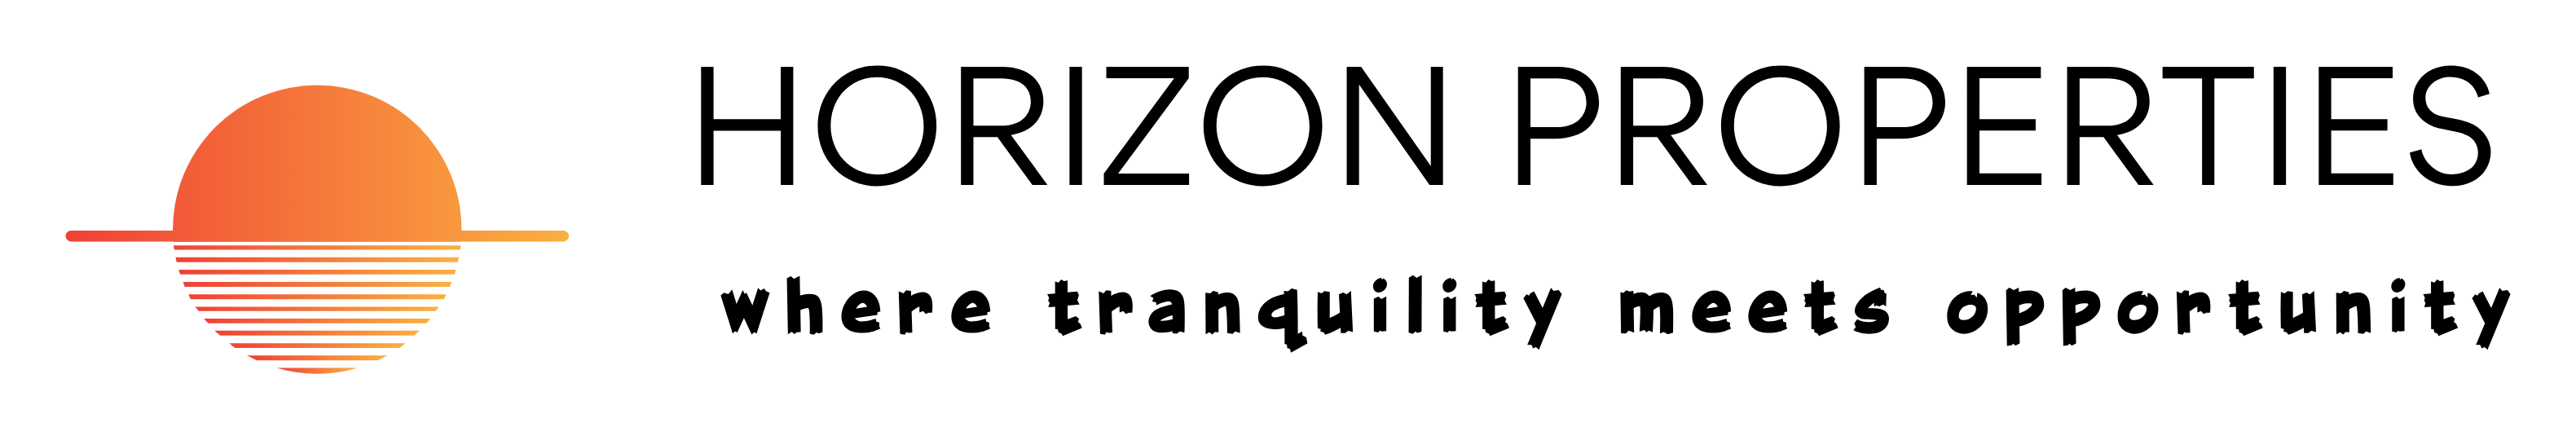 Horizon Properties International